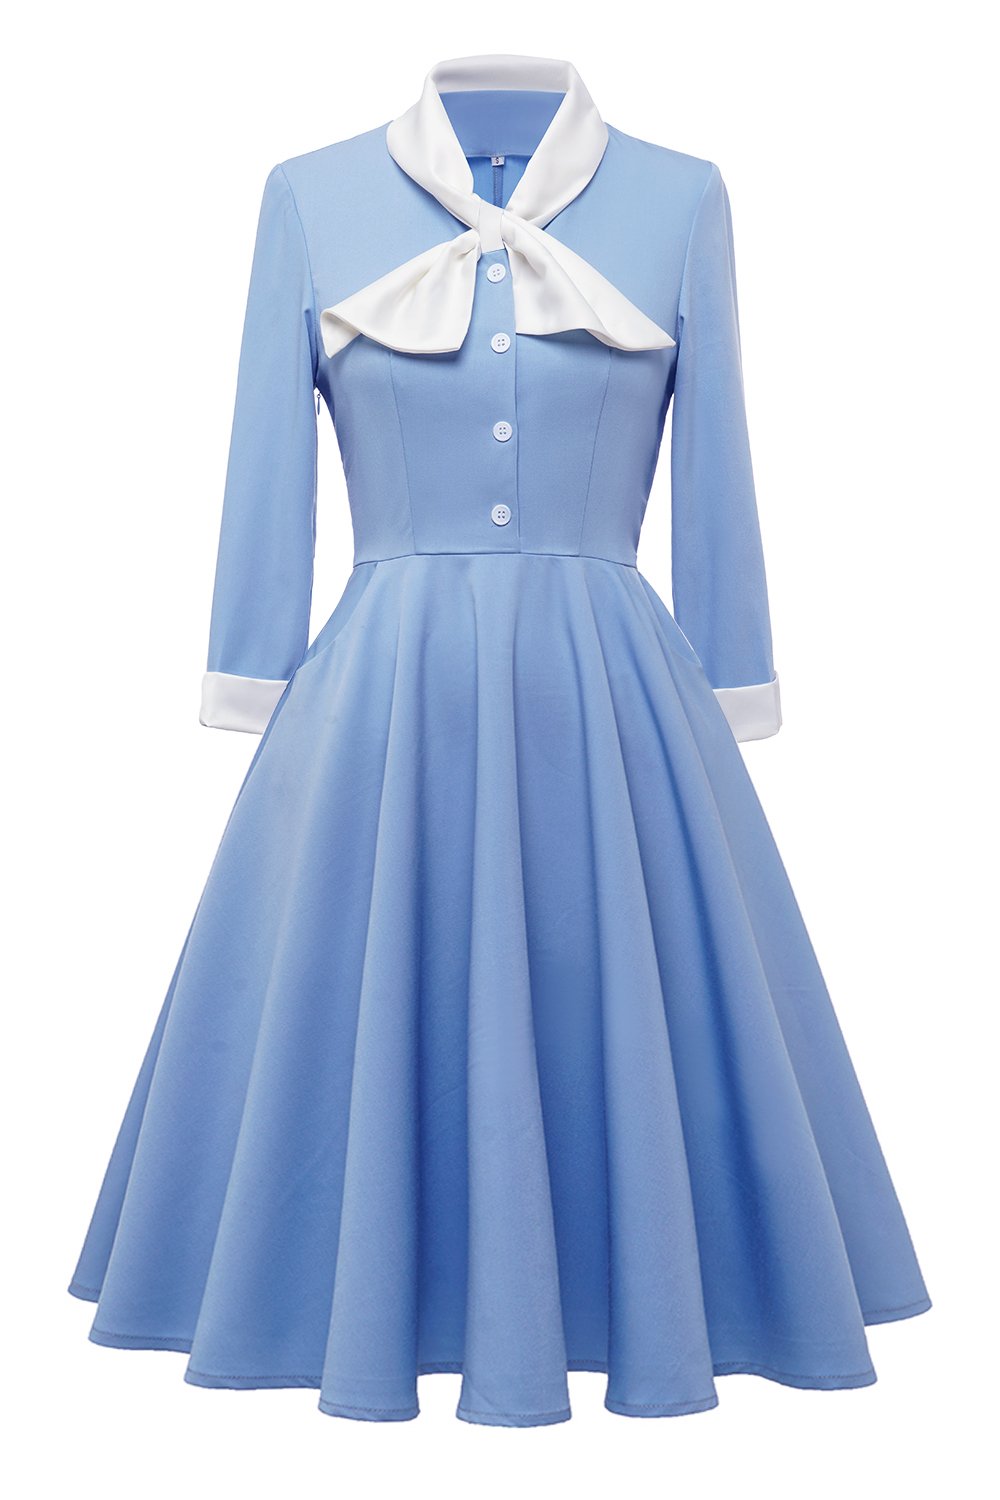 Vestido blue button vintage de 1950 com Bowknot